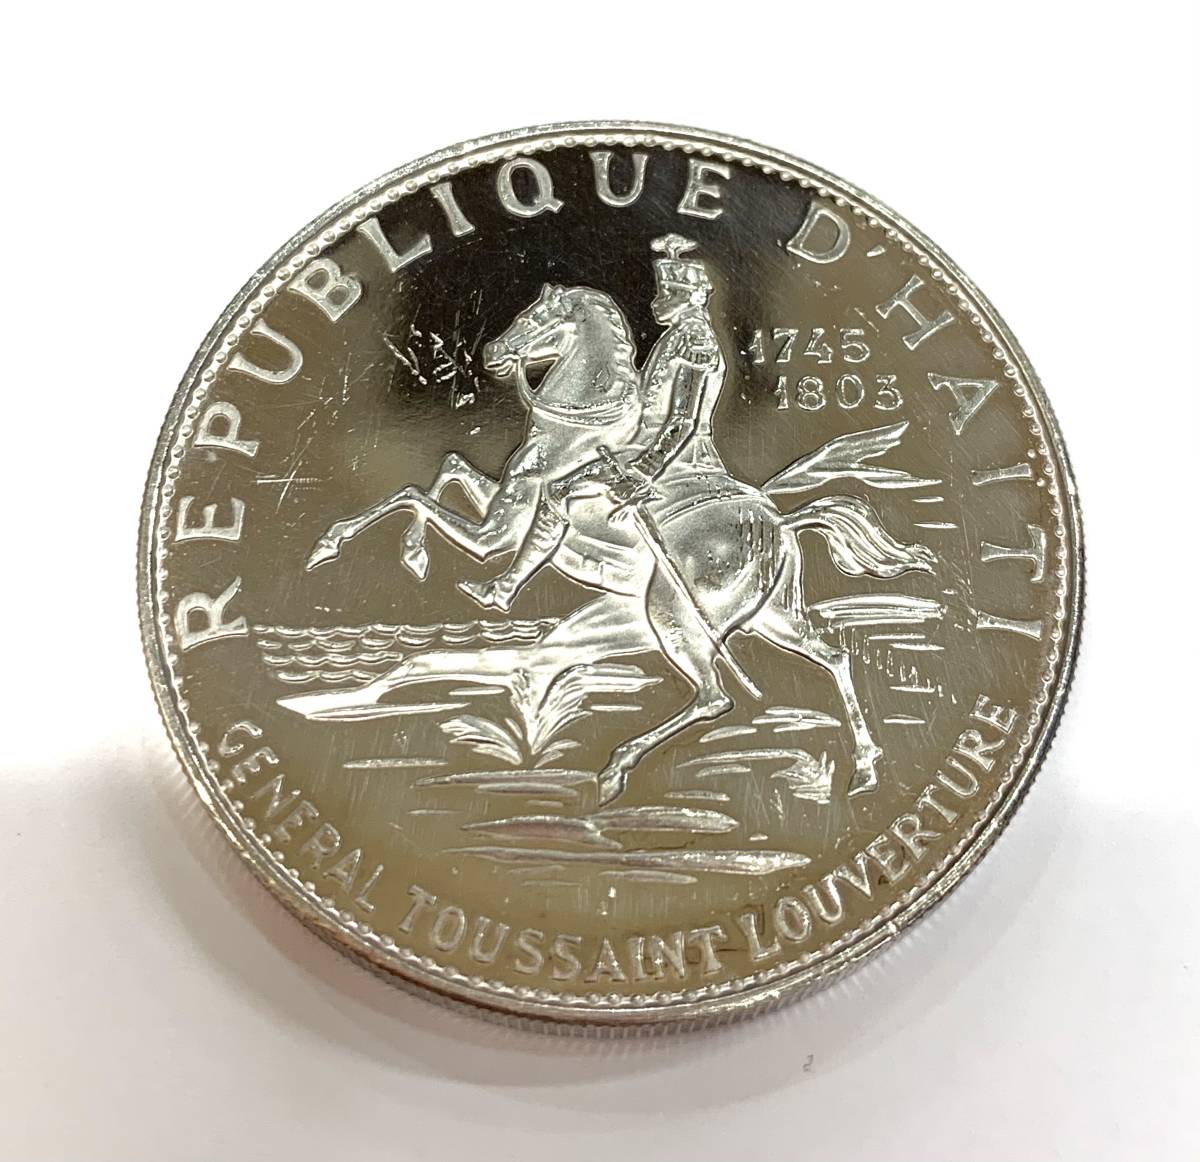 ハイチ共和国 革命10周年記念プルーフ銀貨 10グールド 1968年